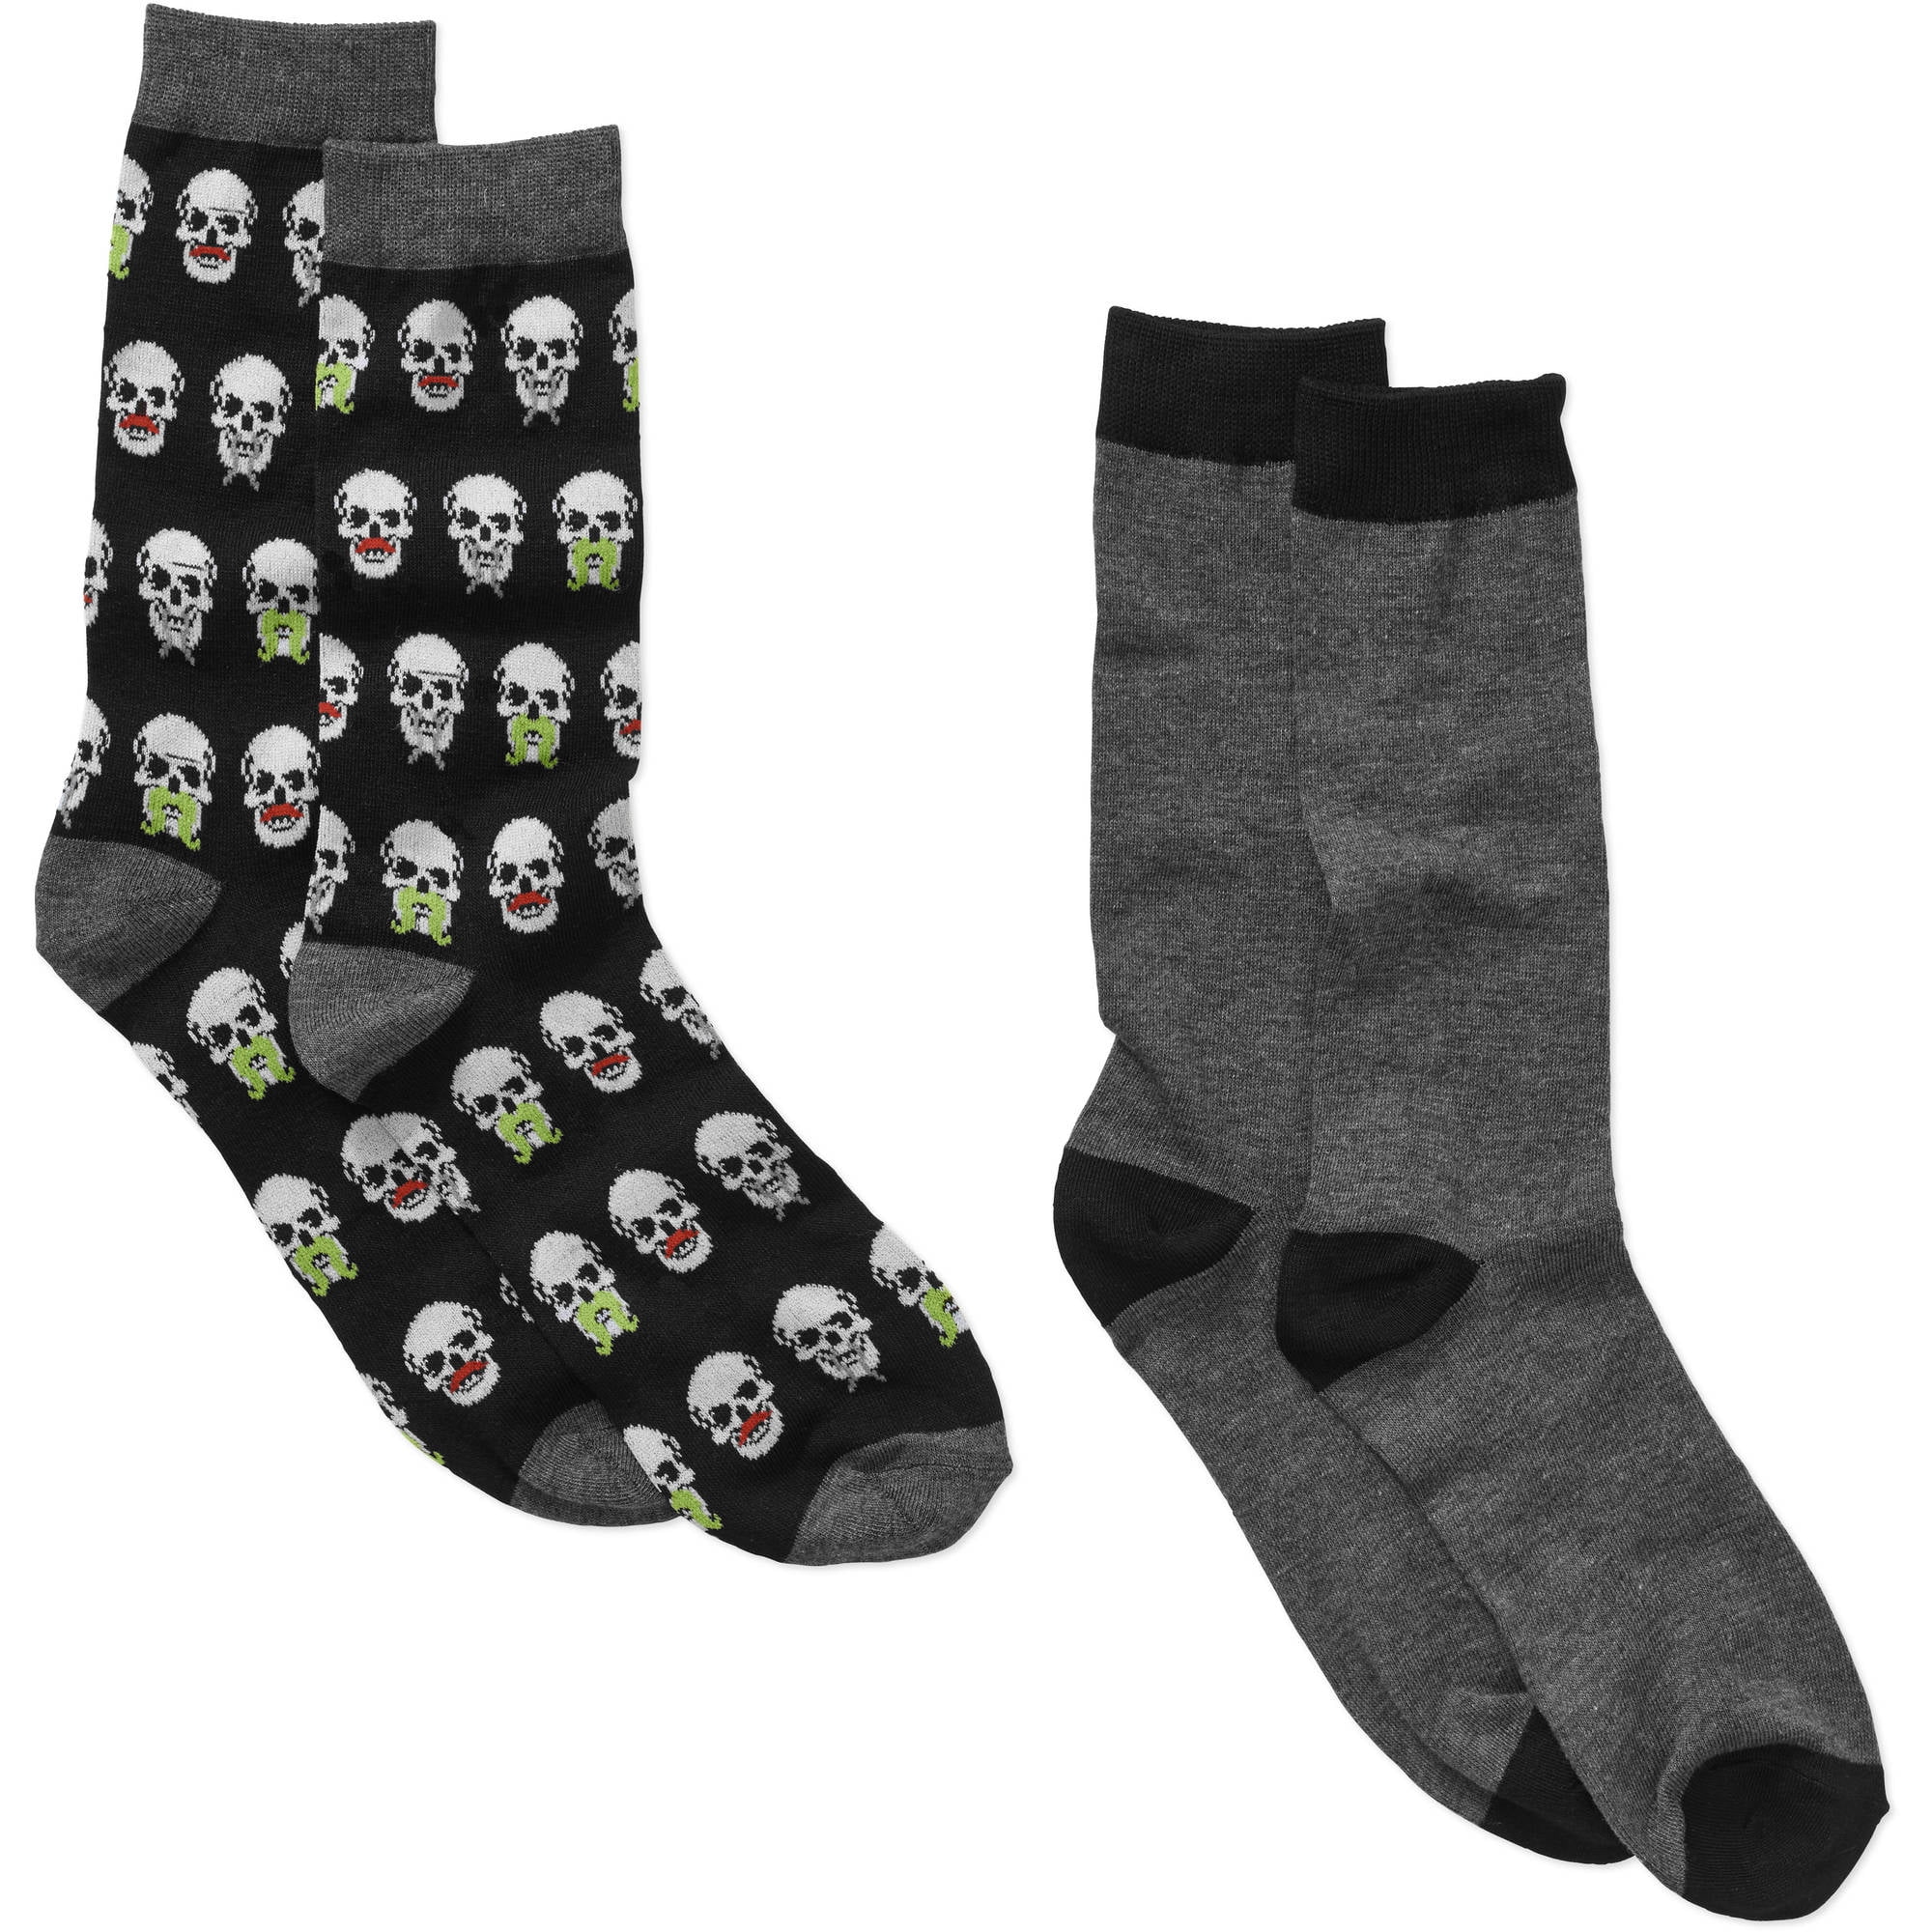 Skull Print Men's Novelty Socks, 2 Pack - Walmart.com